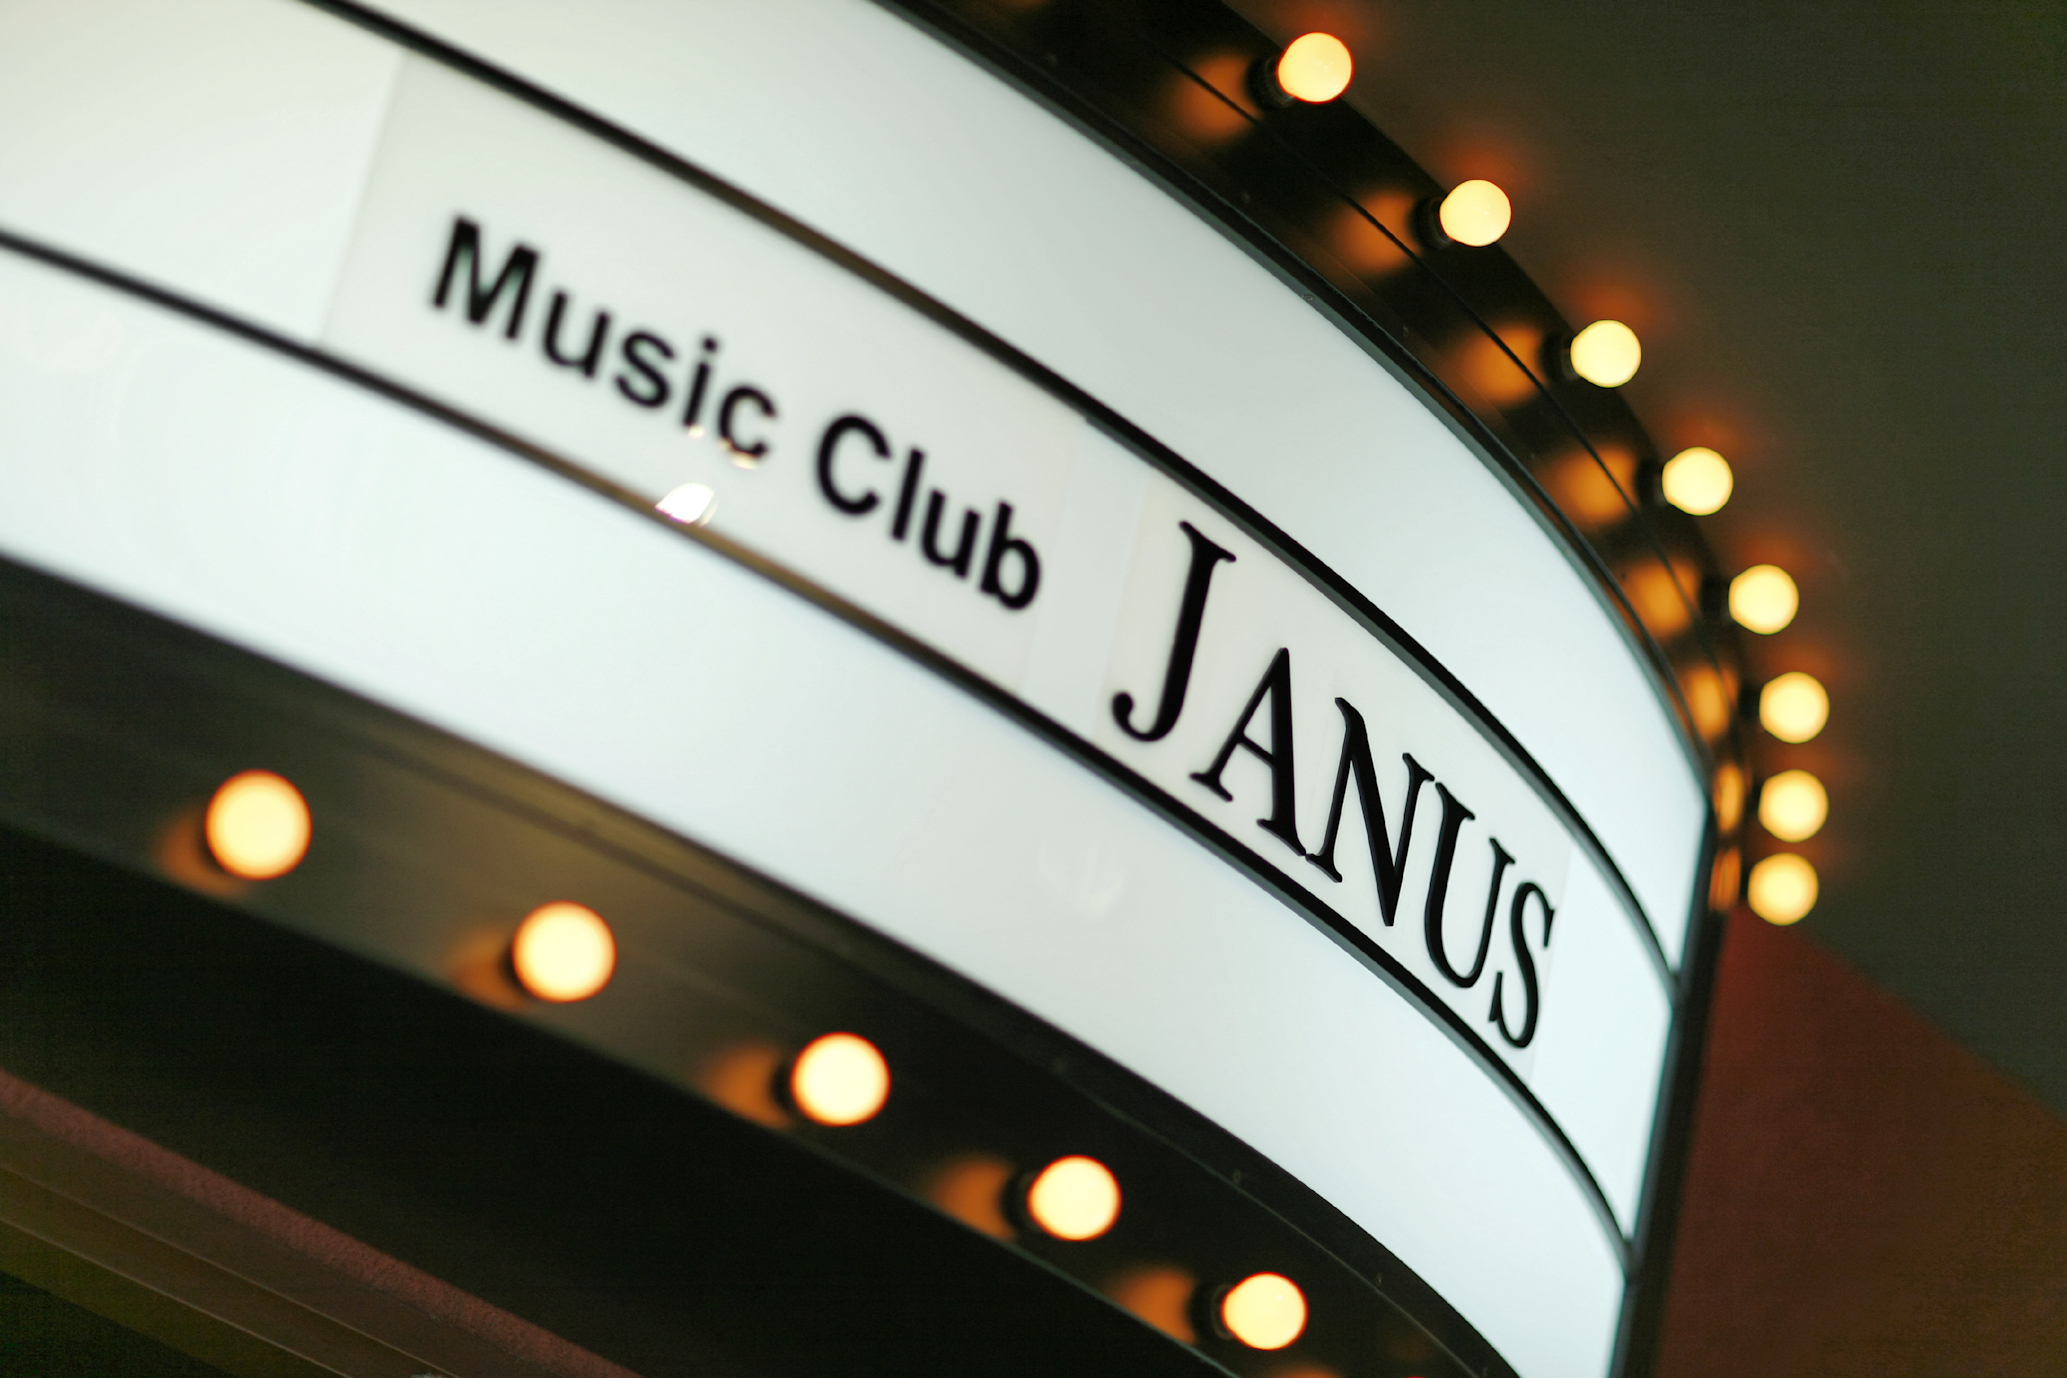 全国各地ライブハウスご意見番をつなぐ ハコつなぎ Vol 13はmusic Club Janus 大阪 Spice エンタメ特化型情報メディア スパイス